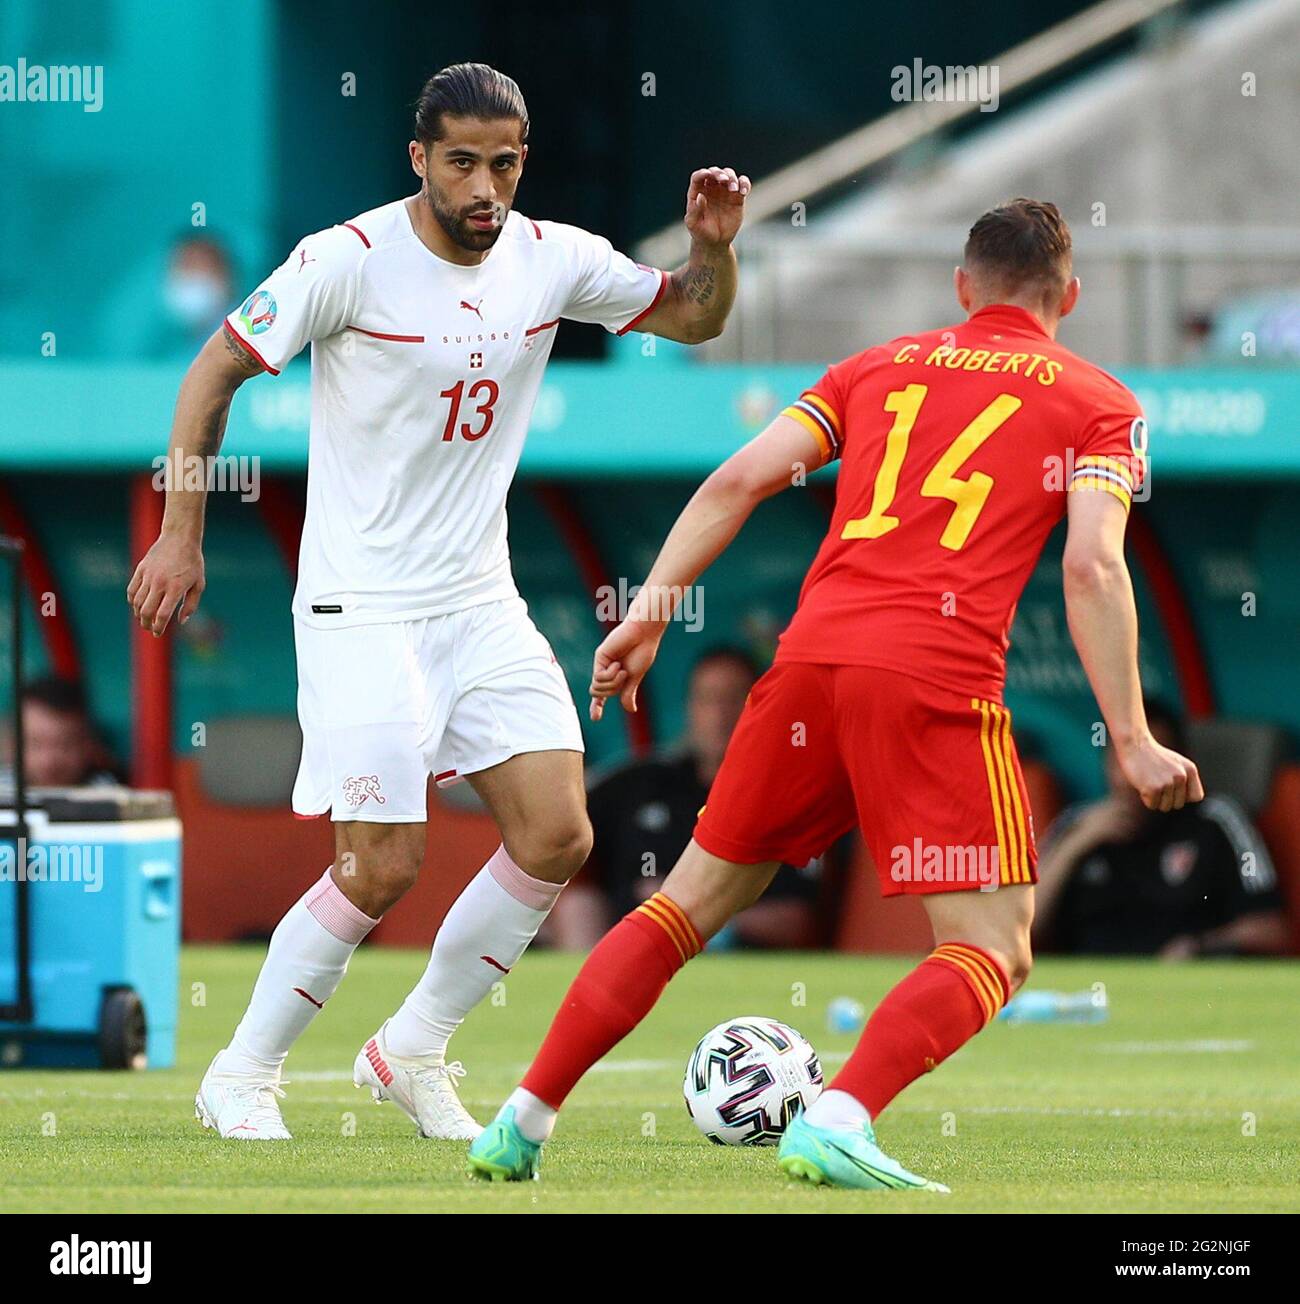 Ricardo Rodriguez della Svizzera in azione durante la partita UEFA Euro 2020 del Gruppo A allo Stadio Olimpico di Baku, Azerbaigian. Data immagine: Sabato 12 giugno 2021. Foto Stock